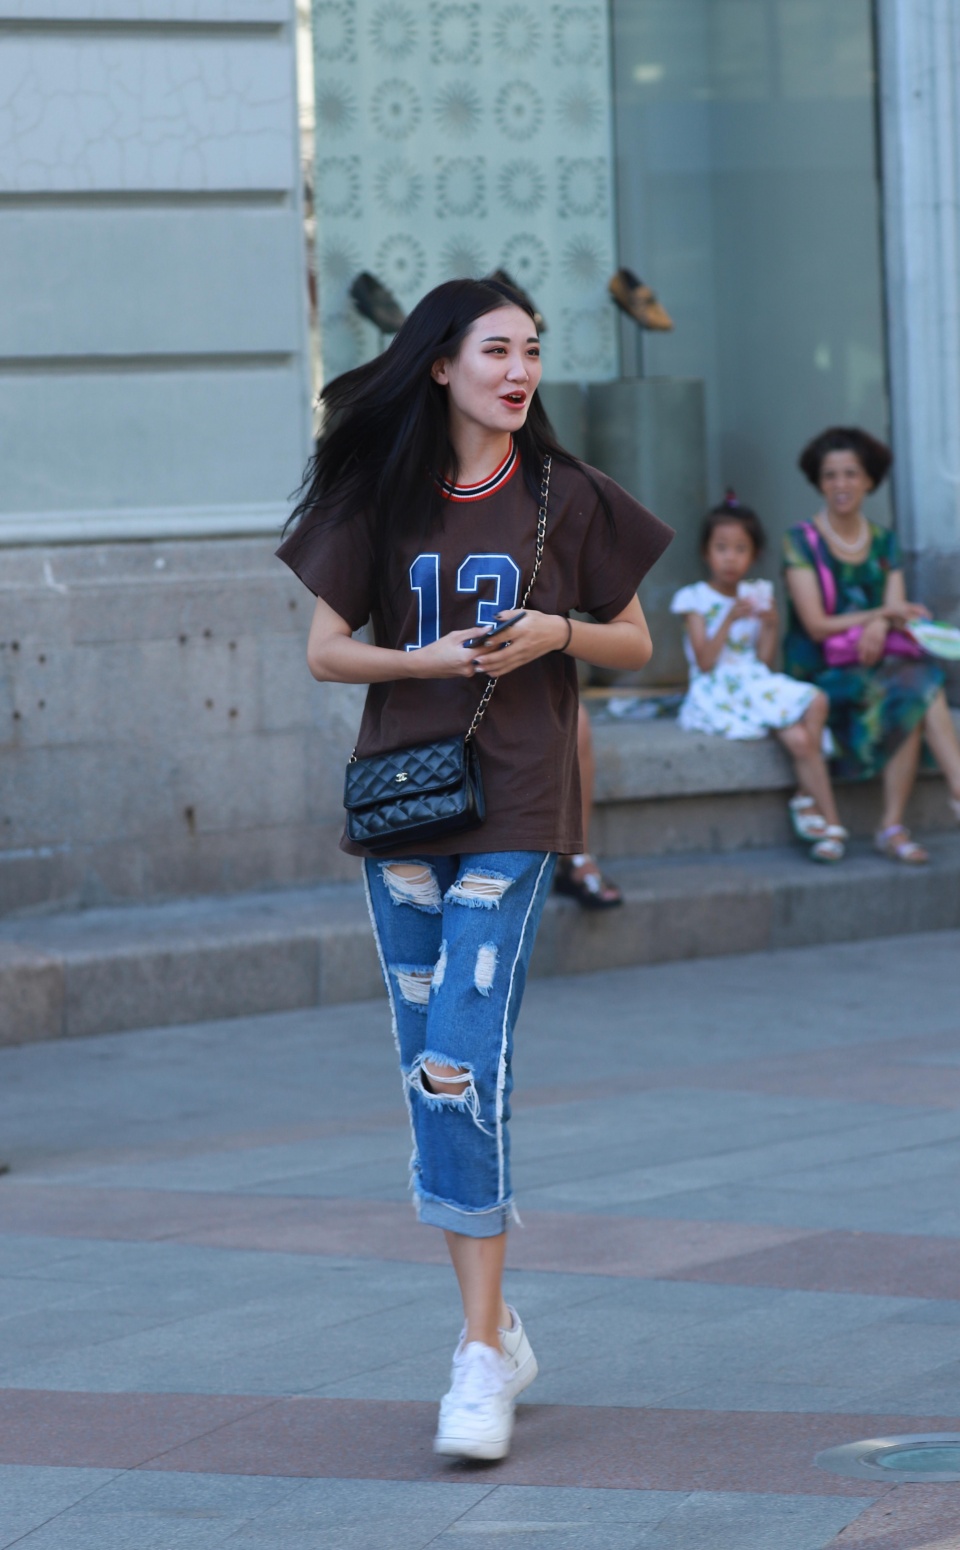 街拍:哈尔滨的姑娘貌美腿长,性格开朗,你喜欢看吗?